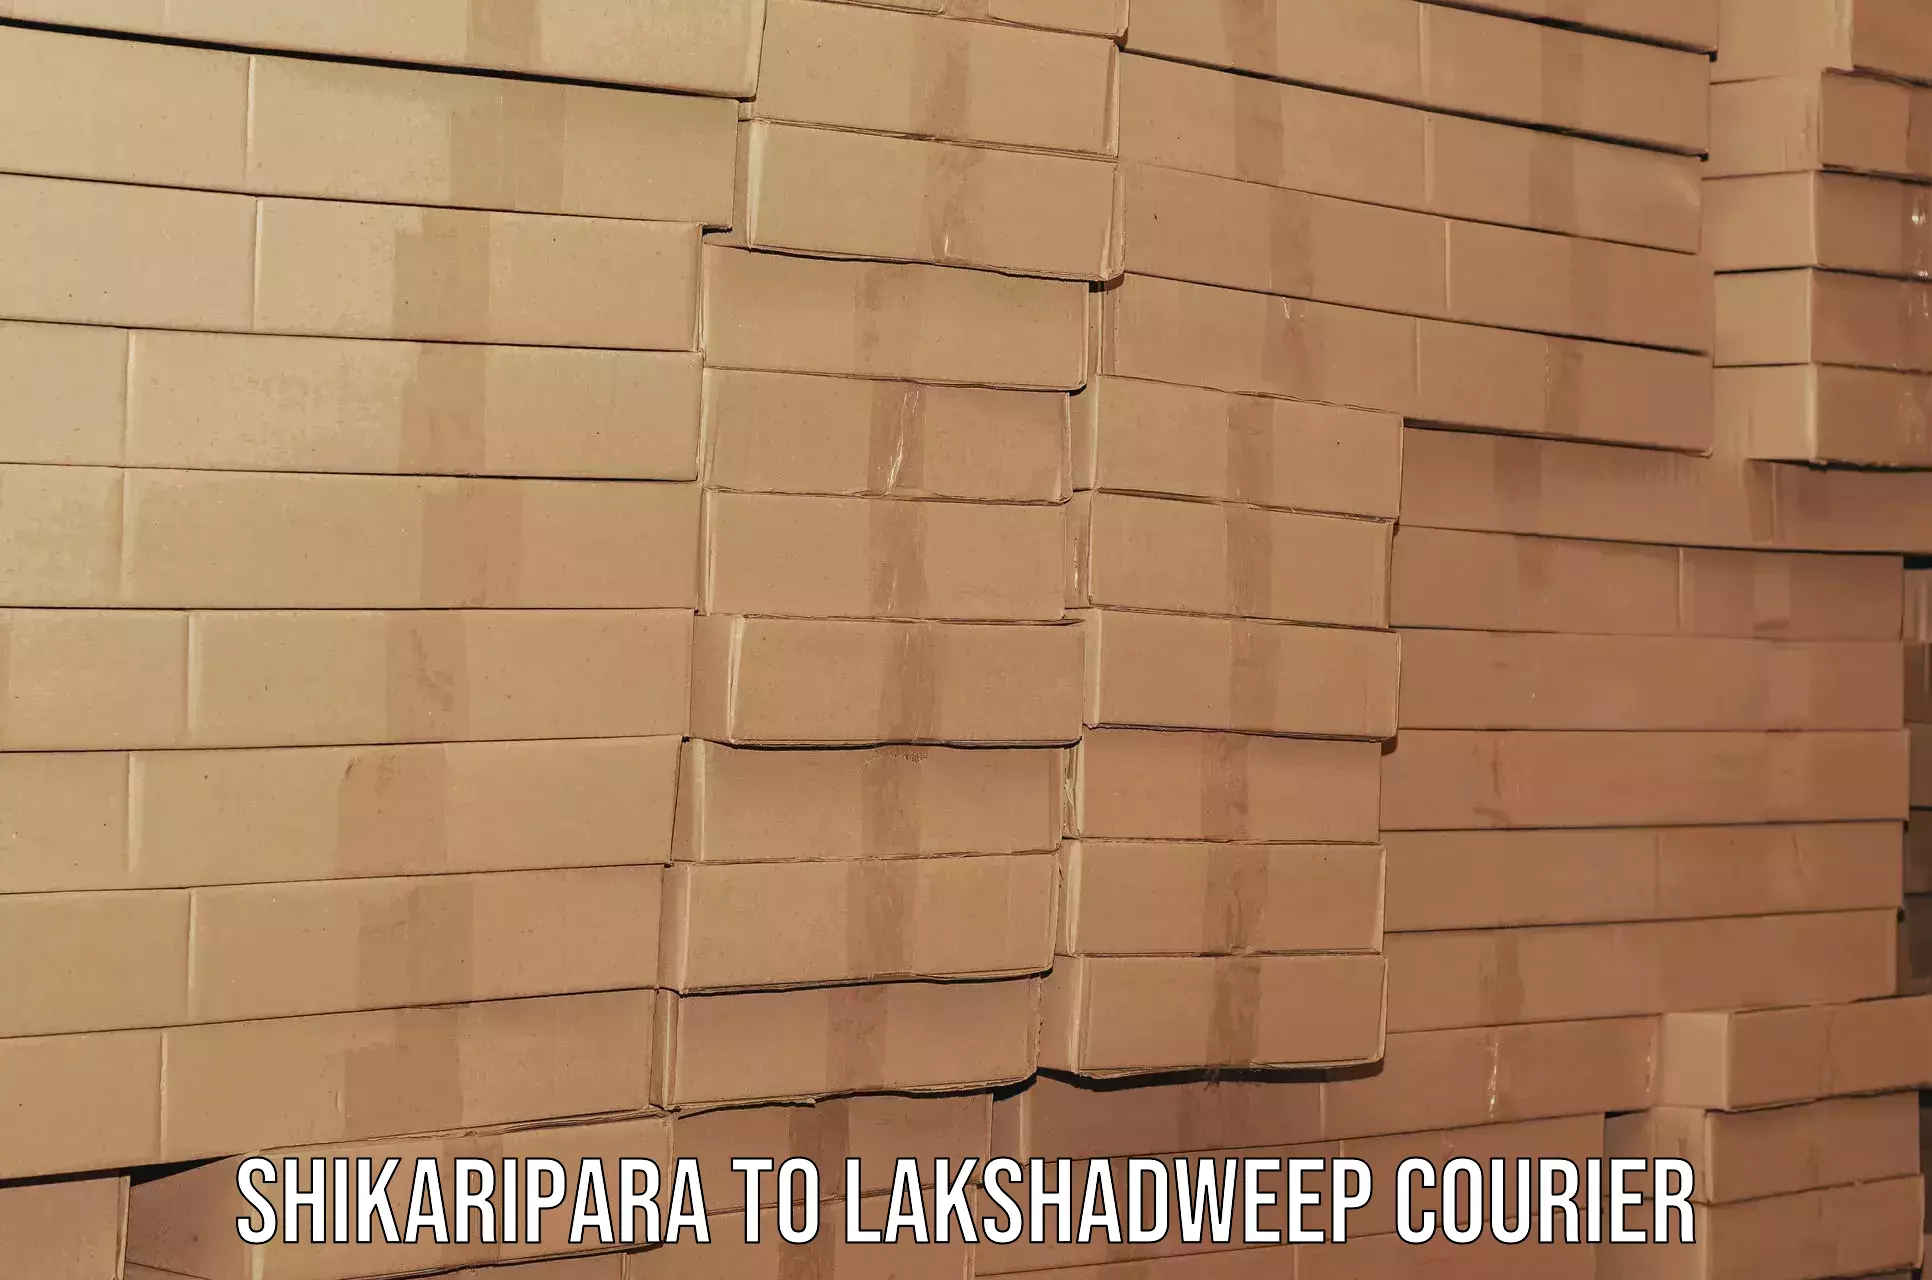 Furniture moving plans Shikaripara to Lakshadweep